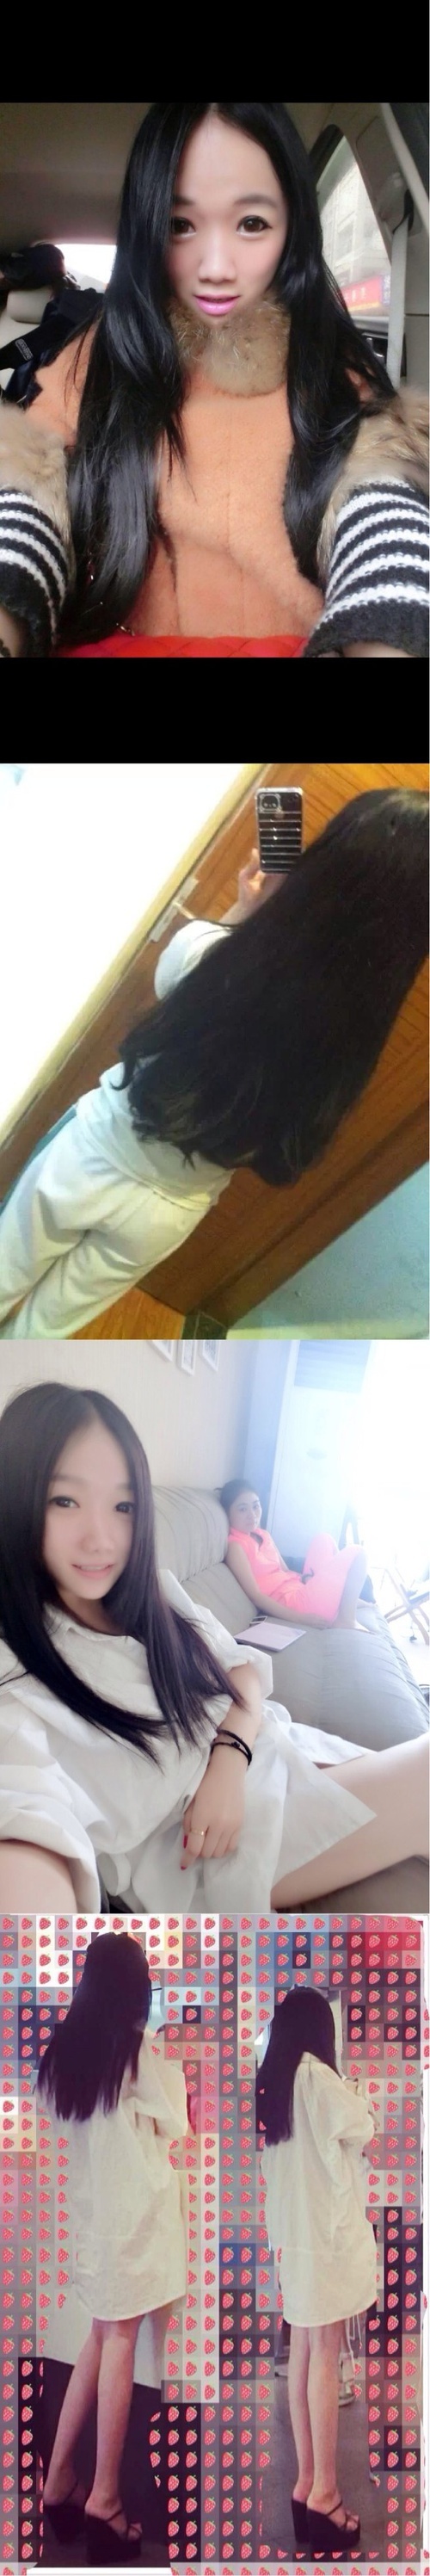 我已剪短我的发 剪短了长发 剪一地不被爱的分叉_来自Ahching Chau的自拍私房照分享